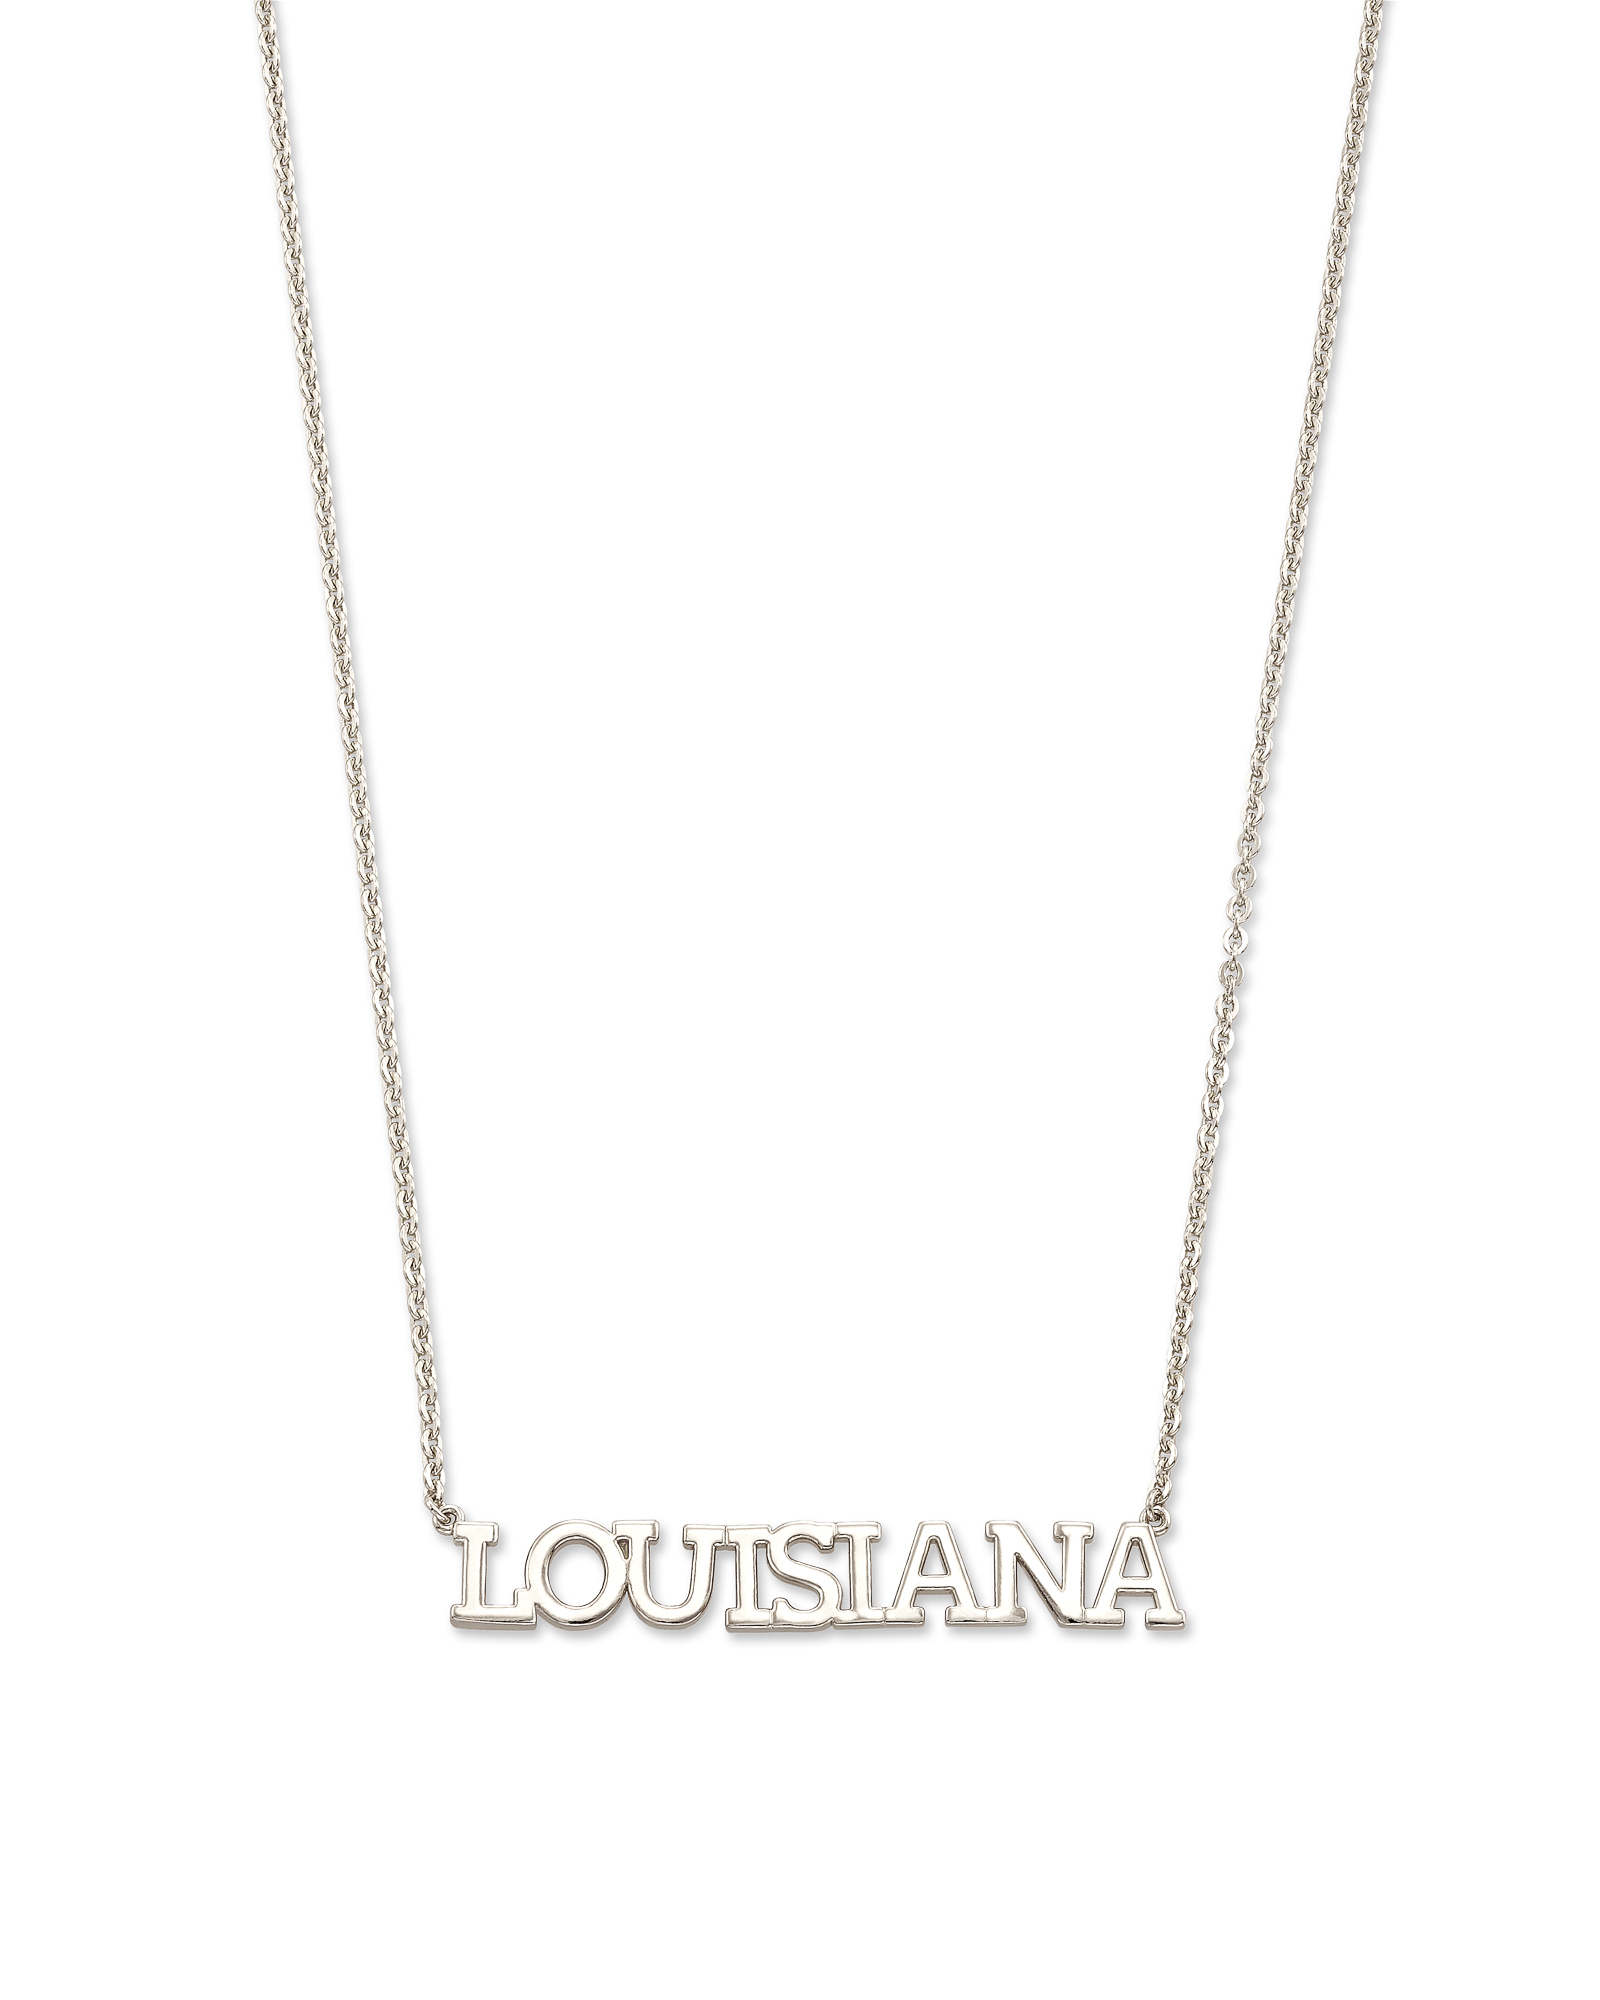 Louisiana necklace